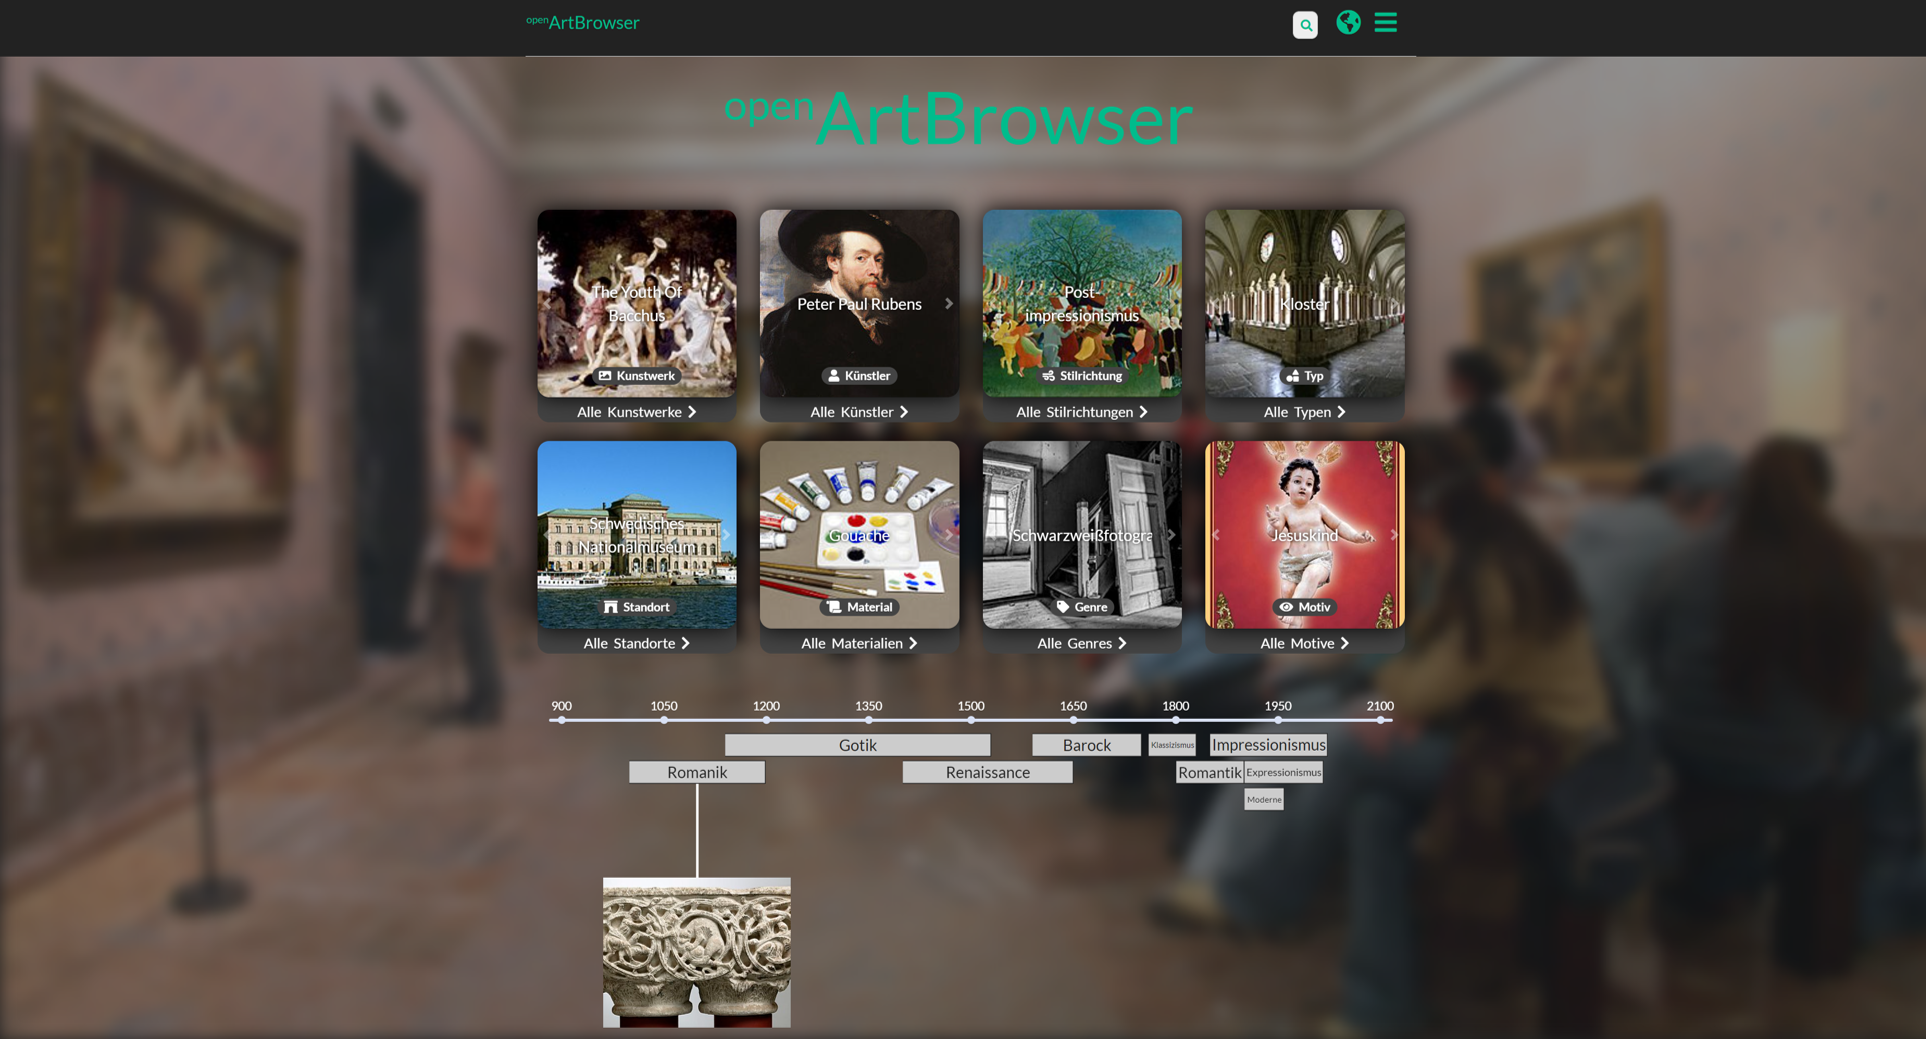 Screenshot von der Oberfläche des ArtBrowsers mit verschiedenen Kacheln für verschiedene Filtermöglichkeiten